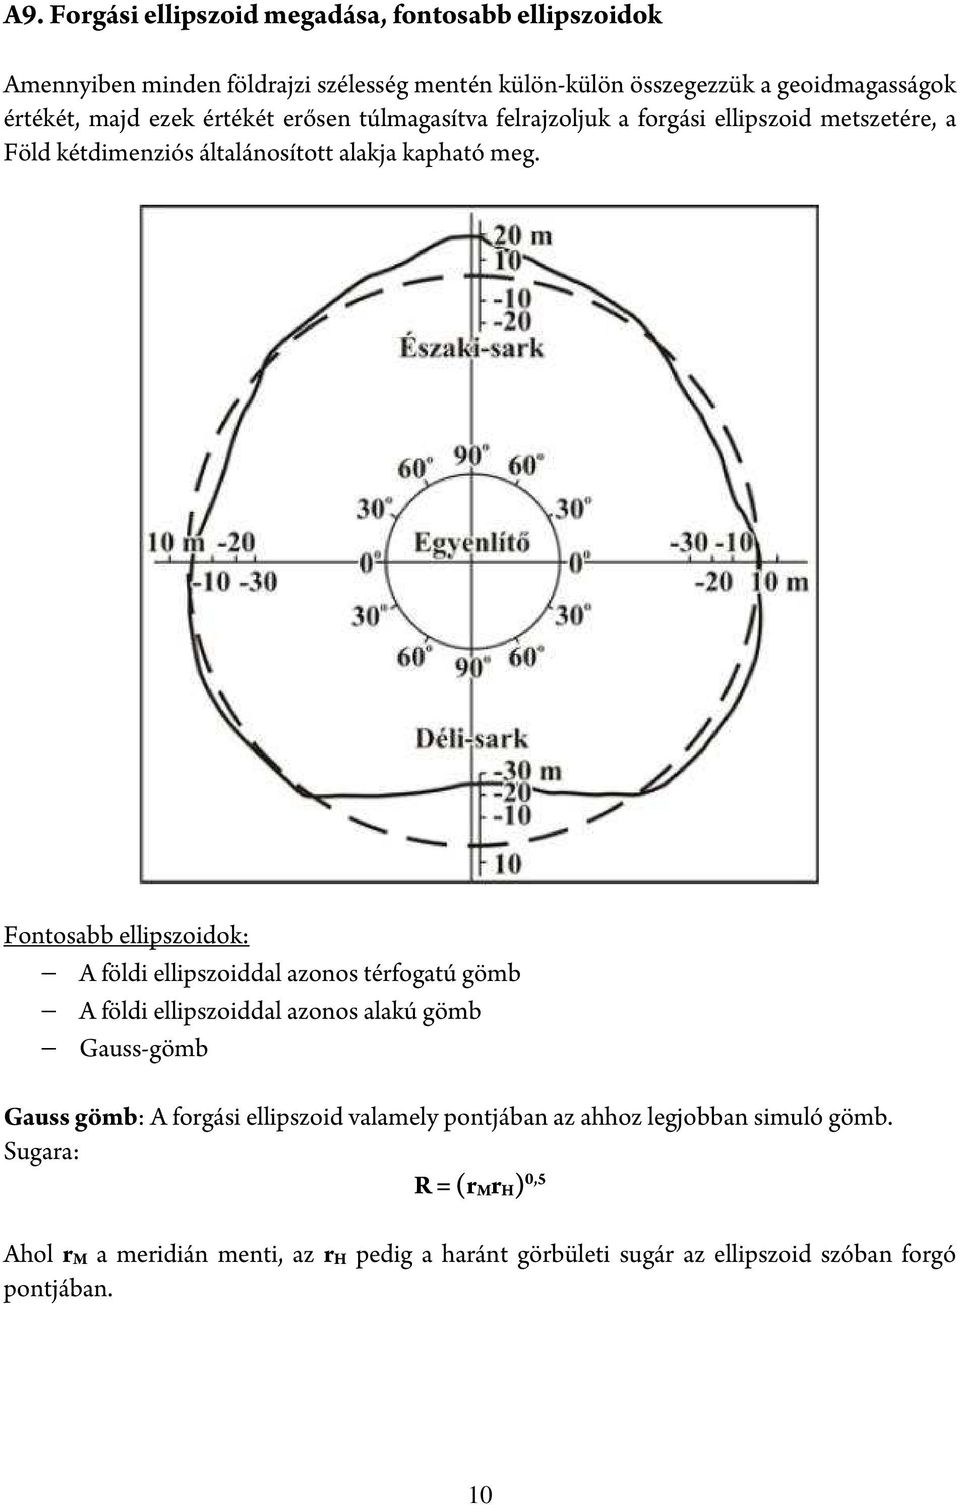 Fontosabb ellipszoidok: A földi ellipszoiddal azonos térfogatú gömb A földi ellipszoiddal azonos alakú gömb Gauss-gömb Gauss gömb: A forgási ellipszoid